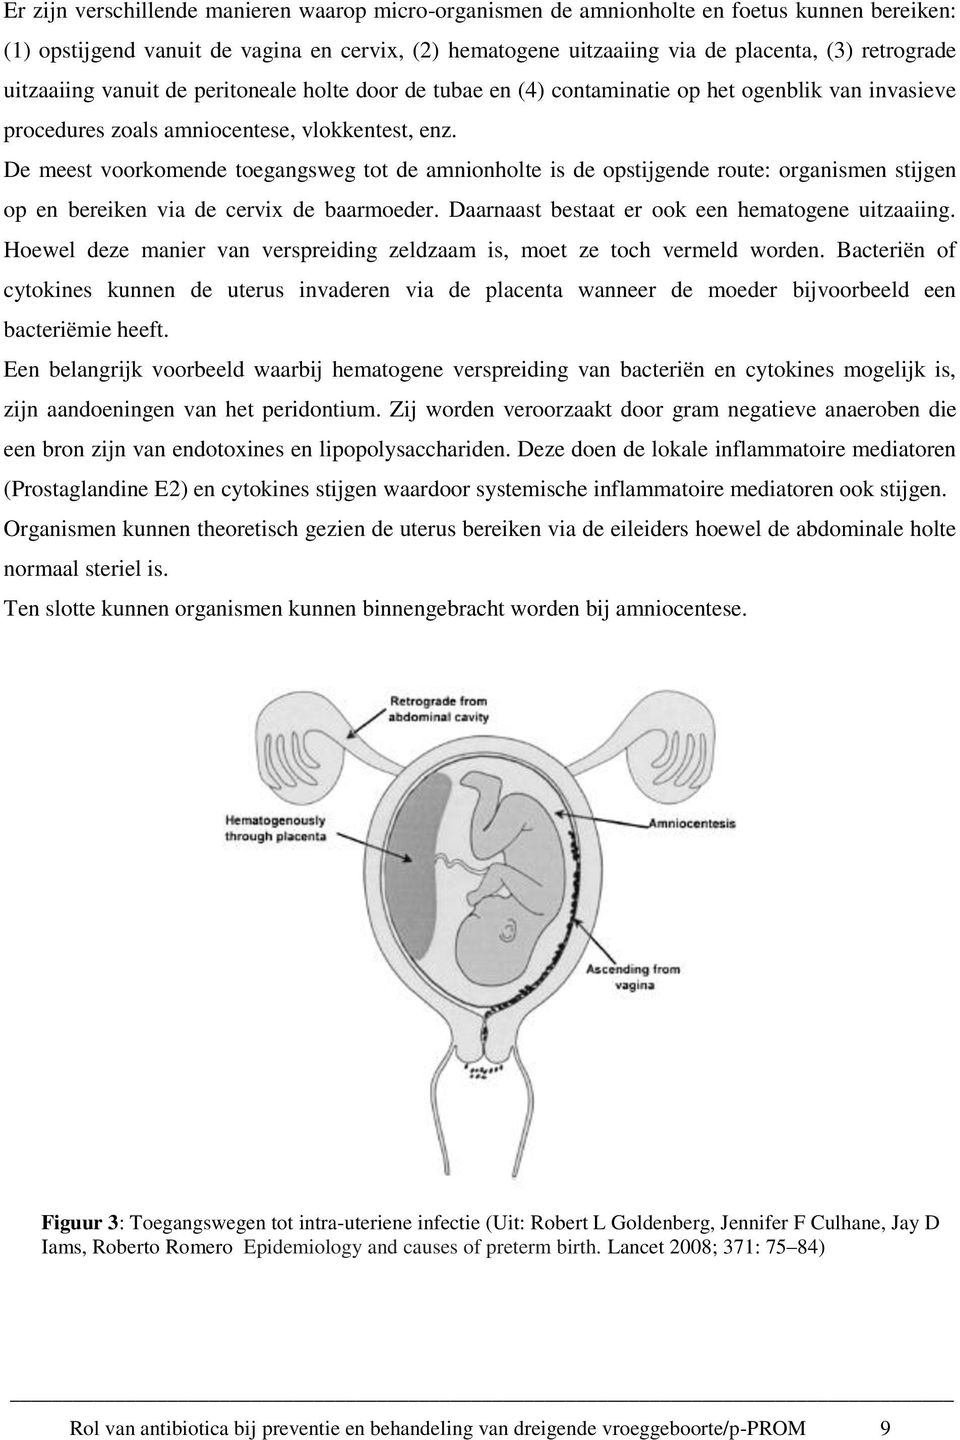 De meest voorkomende toegangsweg tot de amnionholte is de opstijgende route: organismen stijgen op en bereiken via de cervix de baarmoeder. Daarnaast bestaat er ook een hematogene uitzaaiing.